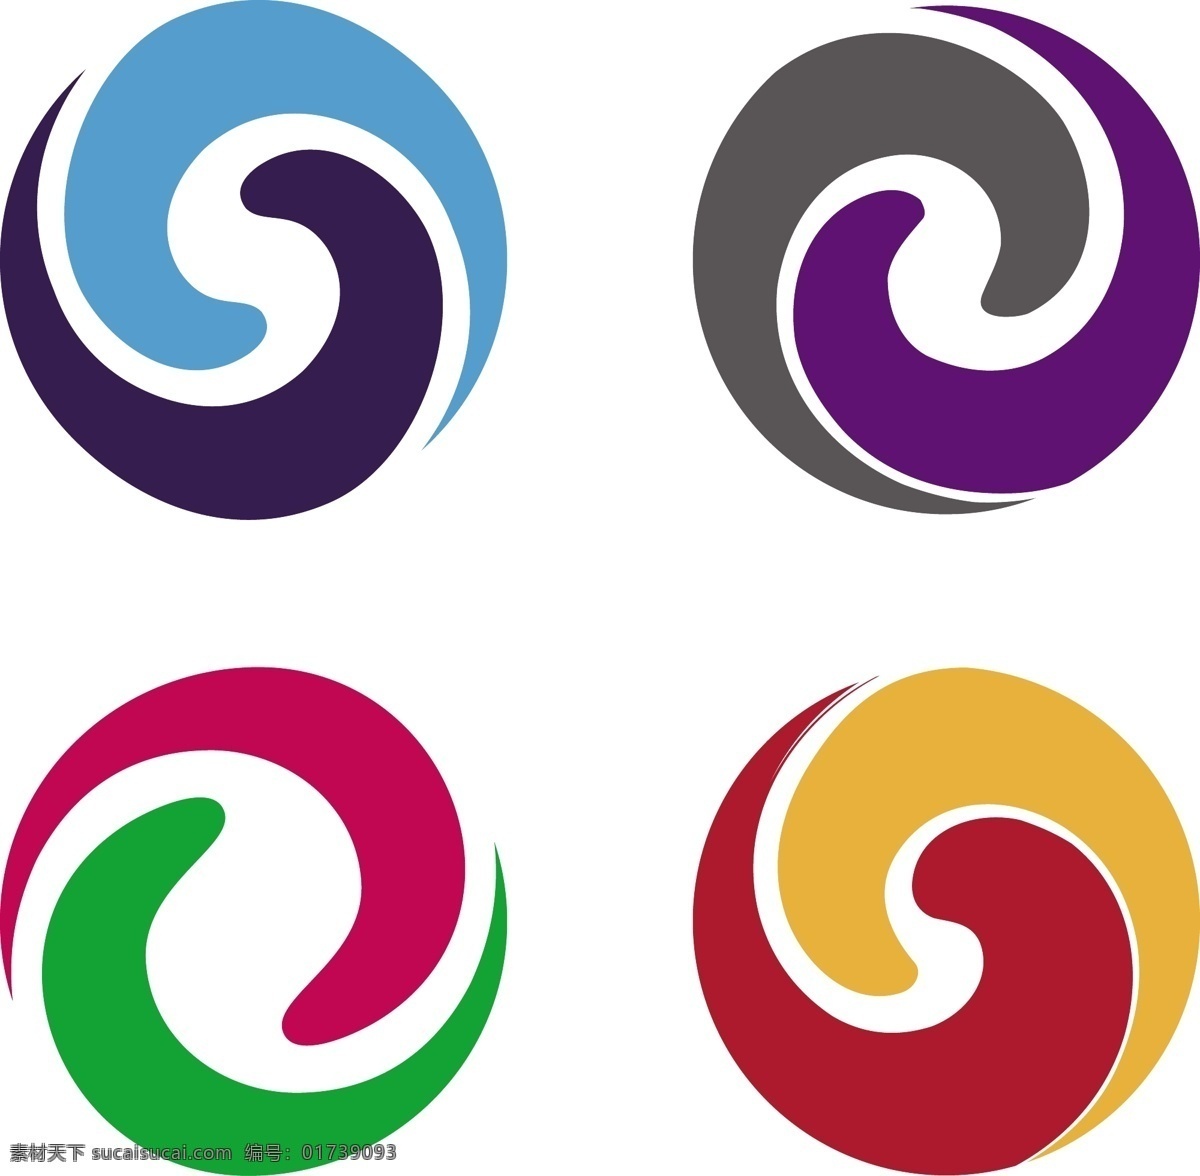 互联网 用途 标识 logo 科技logo 多用途 公司logo 形状 类